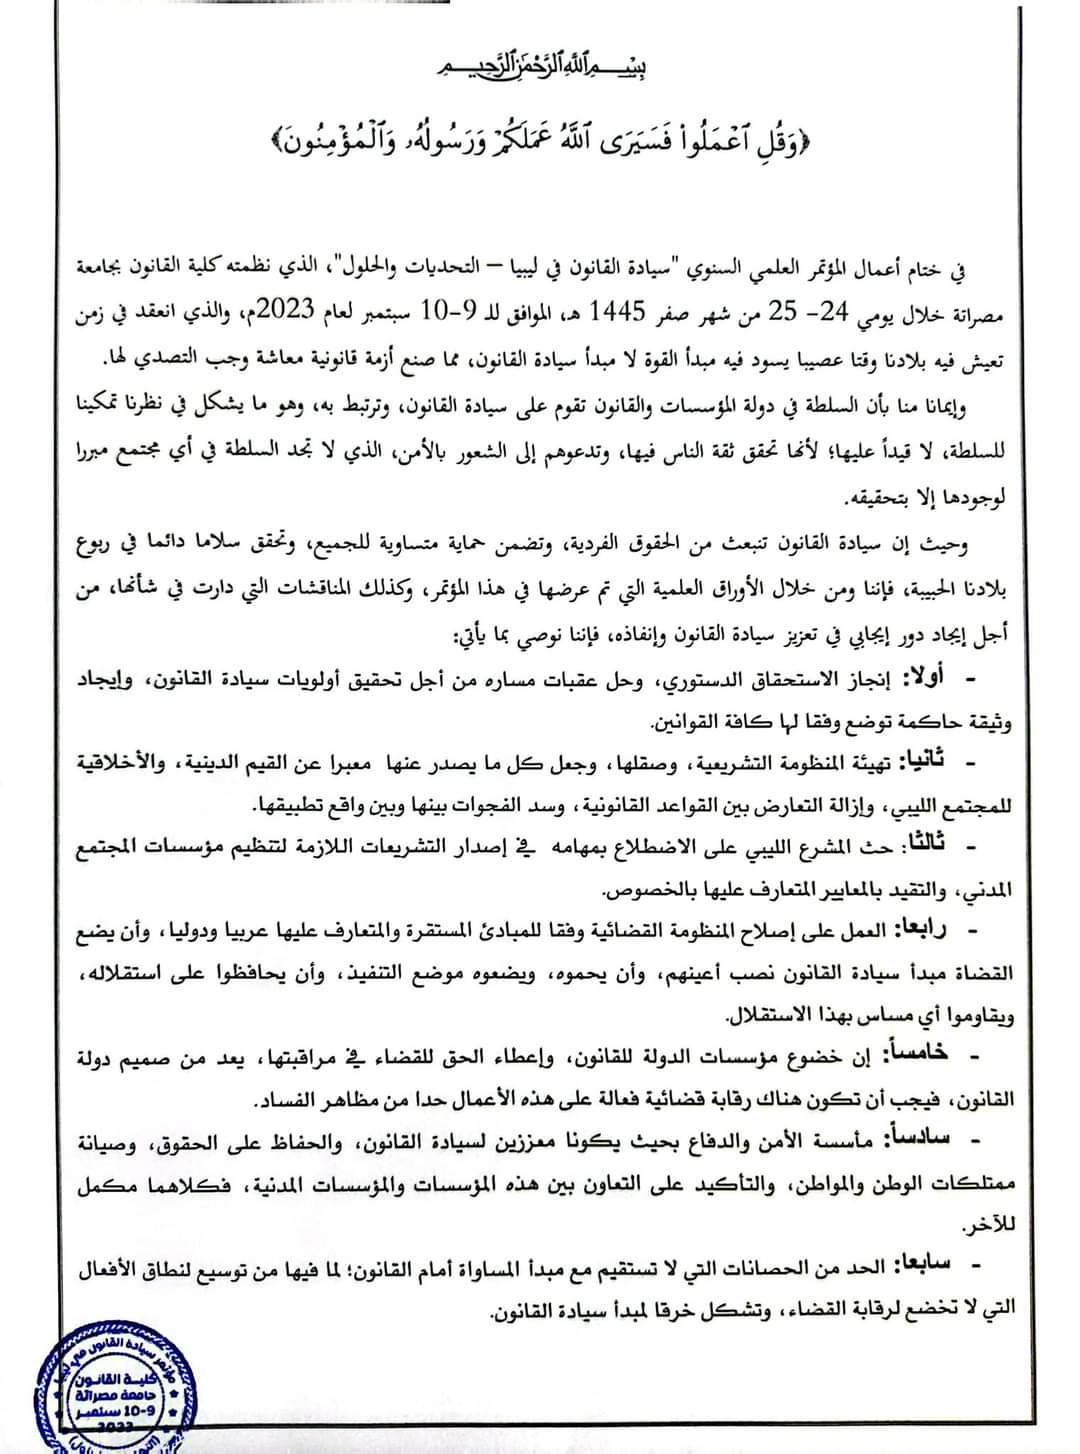 البيان الختامي لمؤتمر سيادة القانون في ليبيا